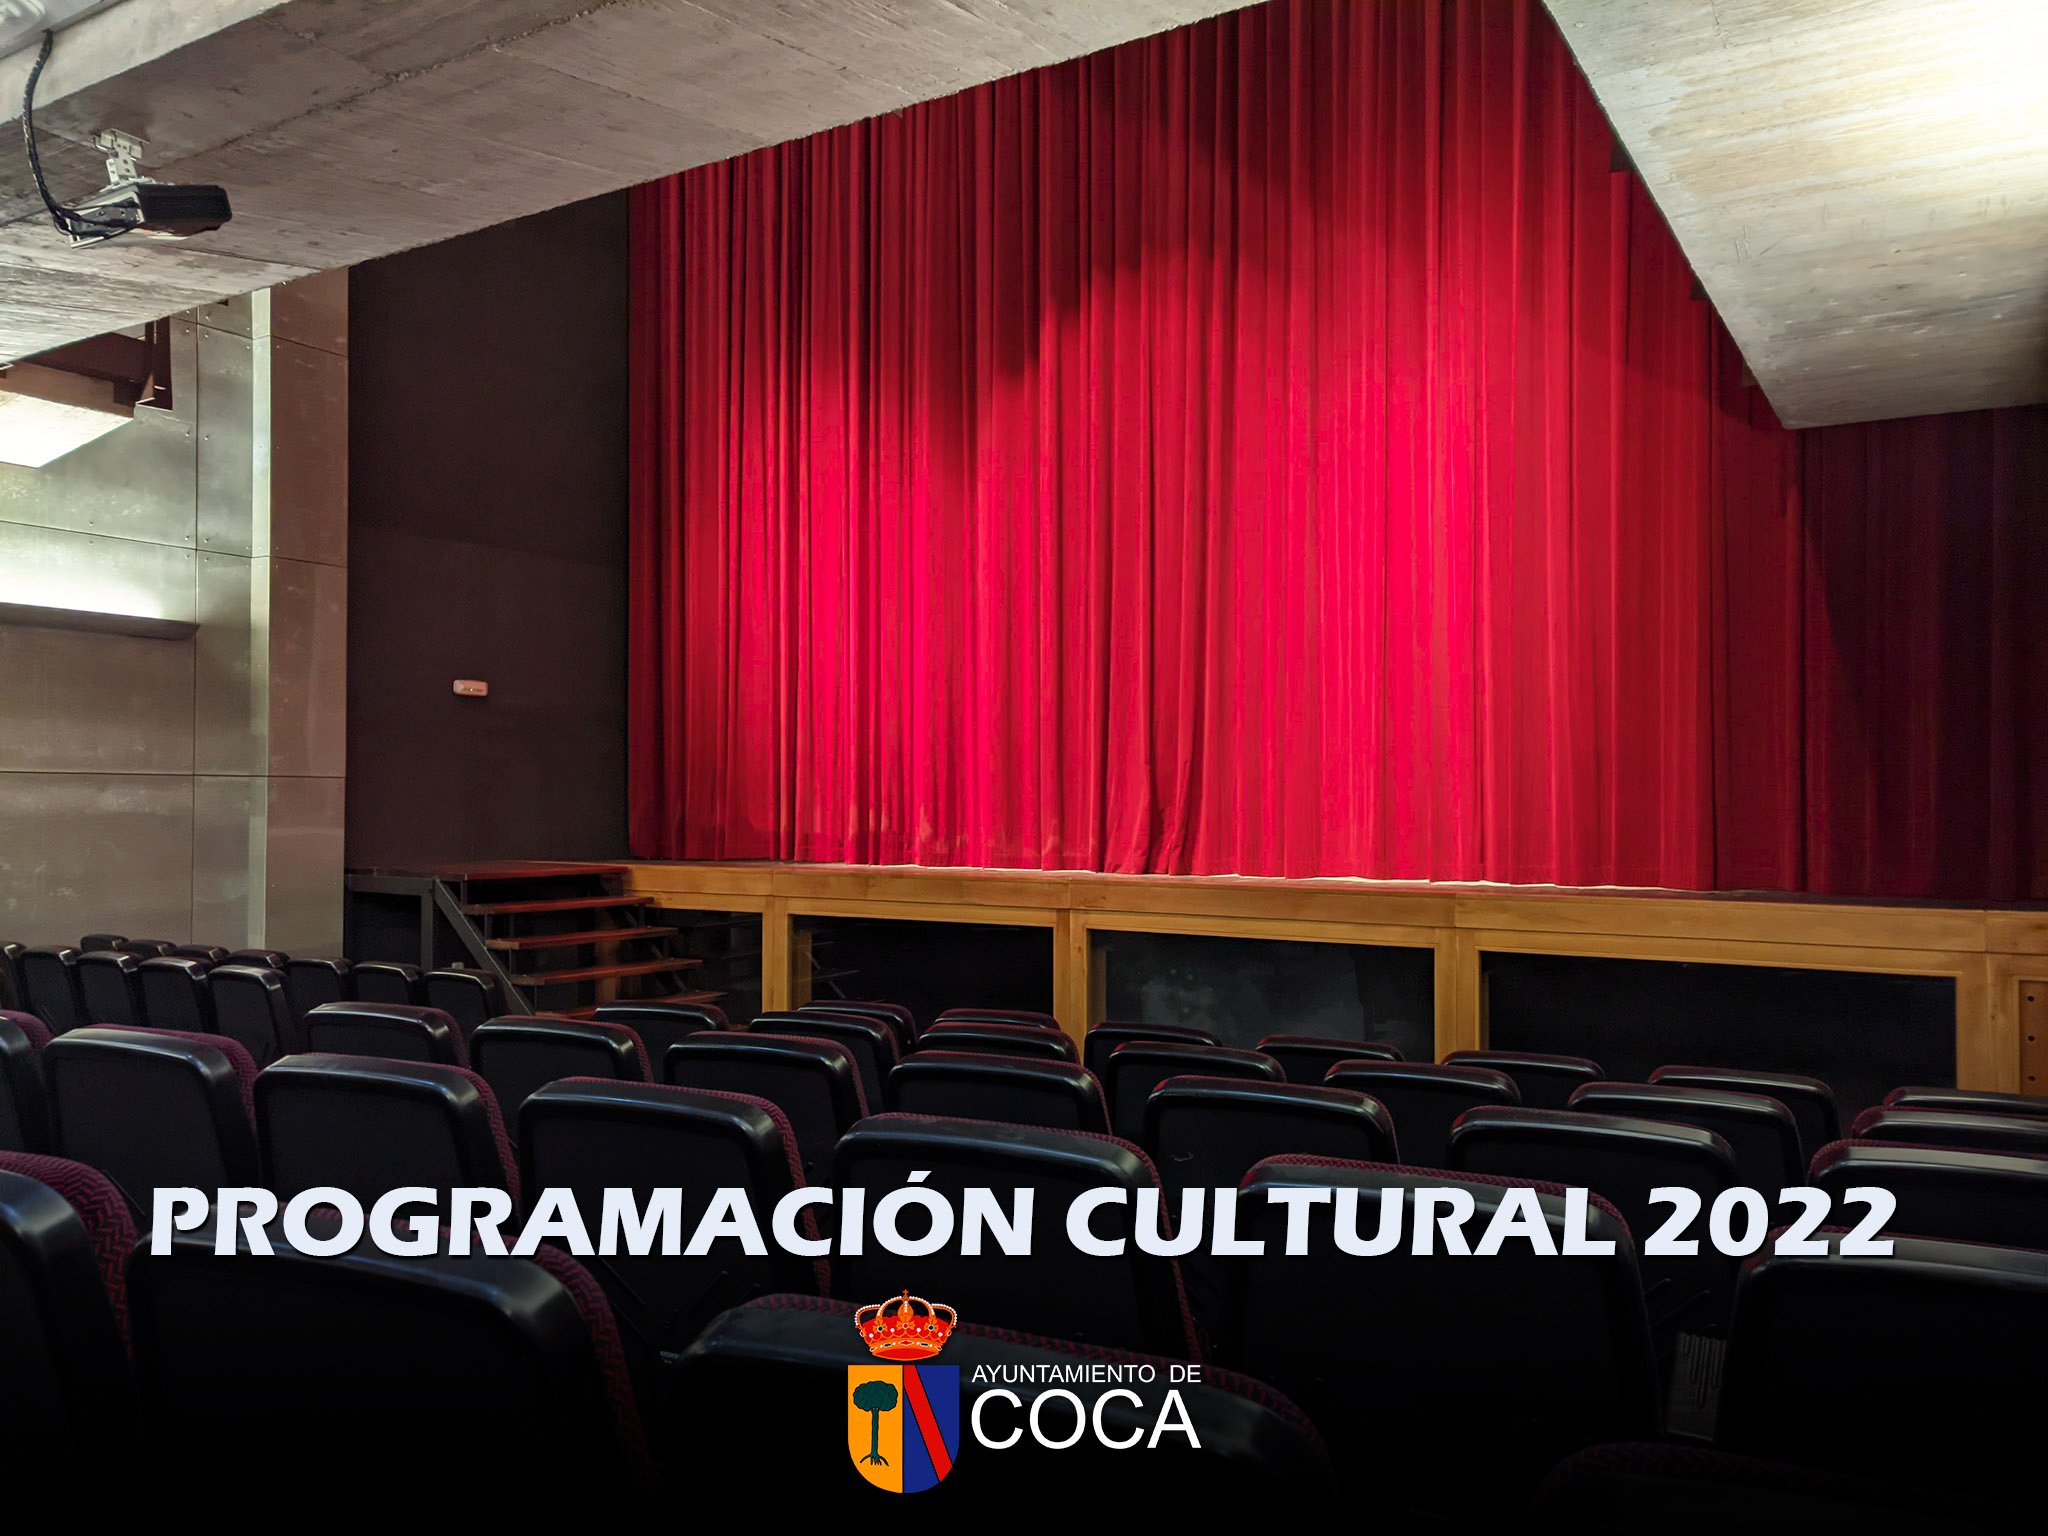 Programación cultural Coca 2022